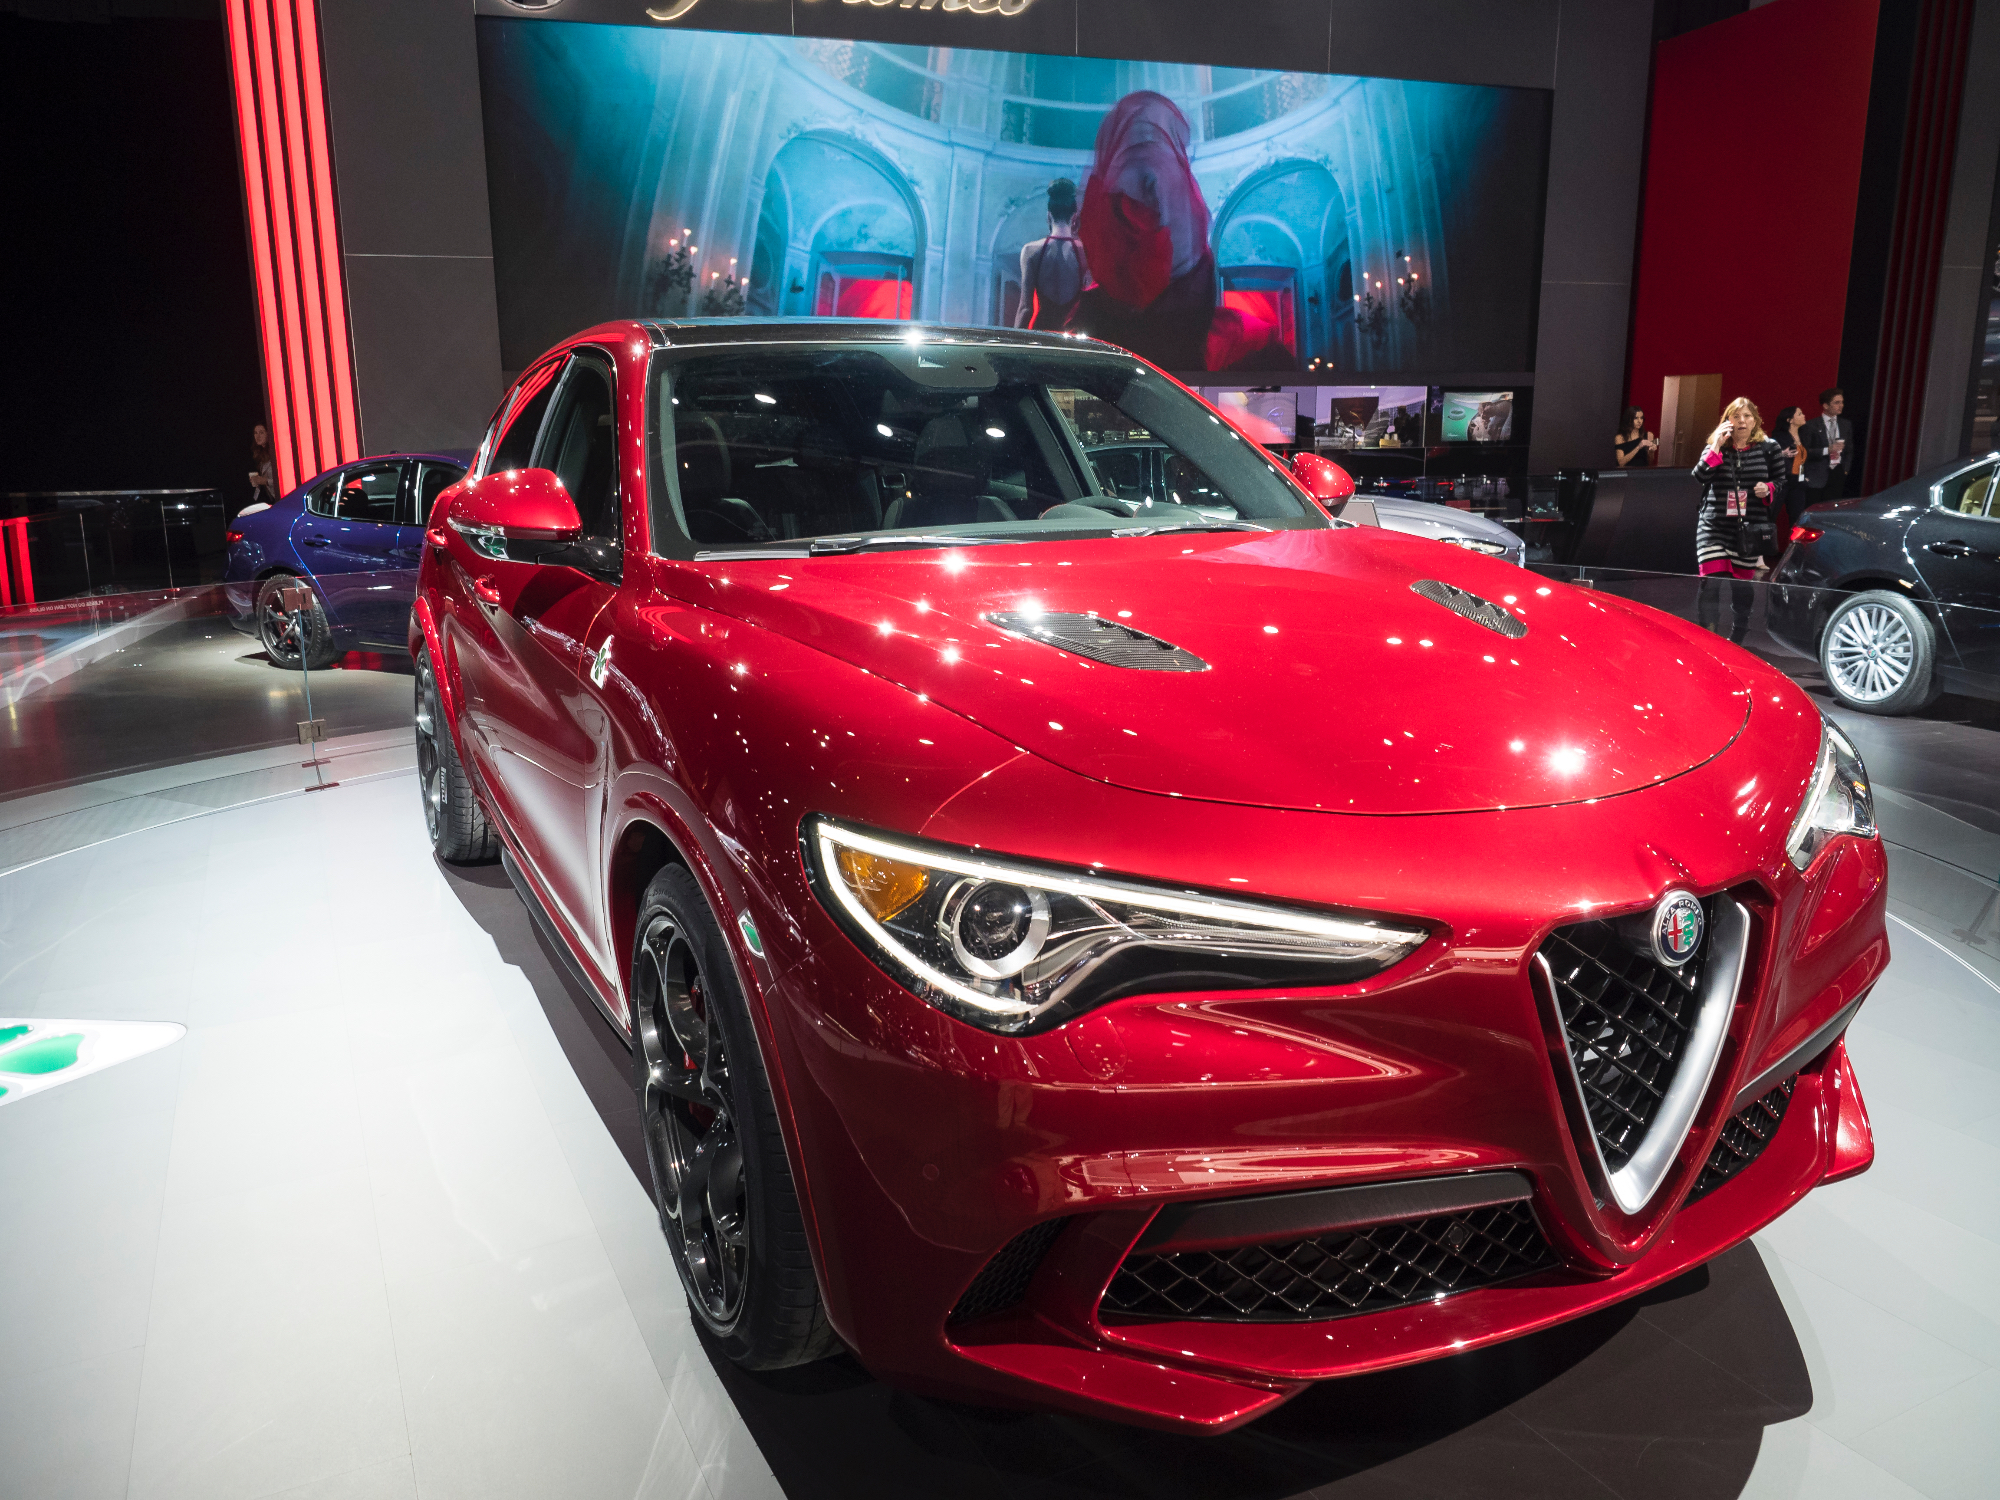 Opazila sem nov model Alfa Romeo avtomobila